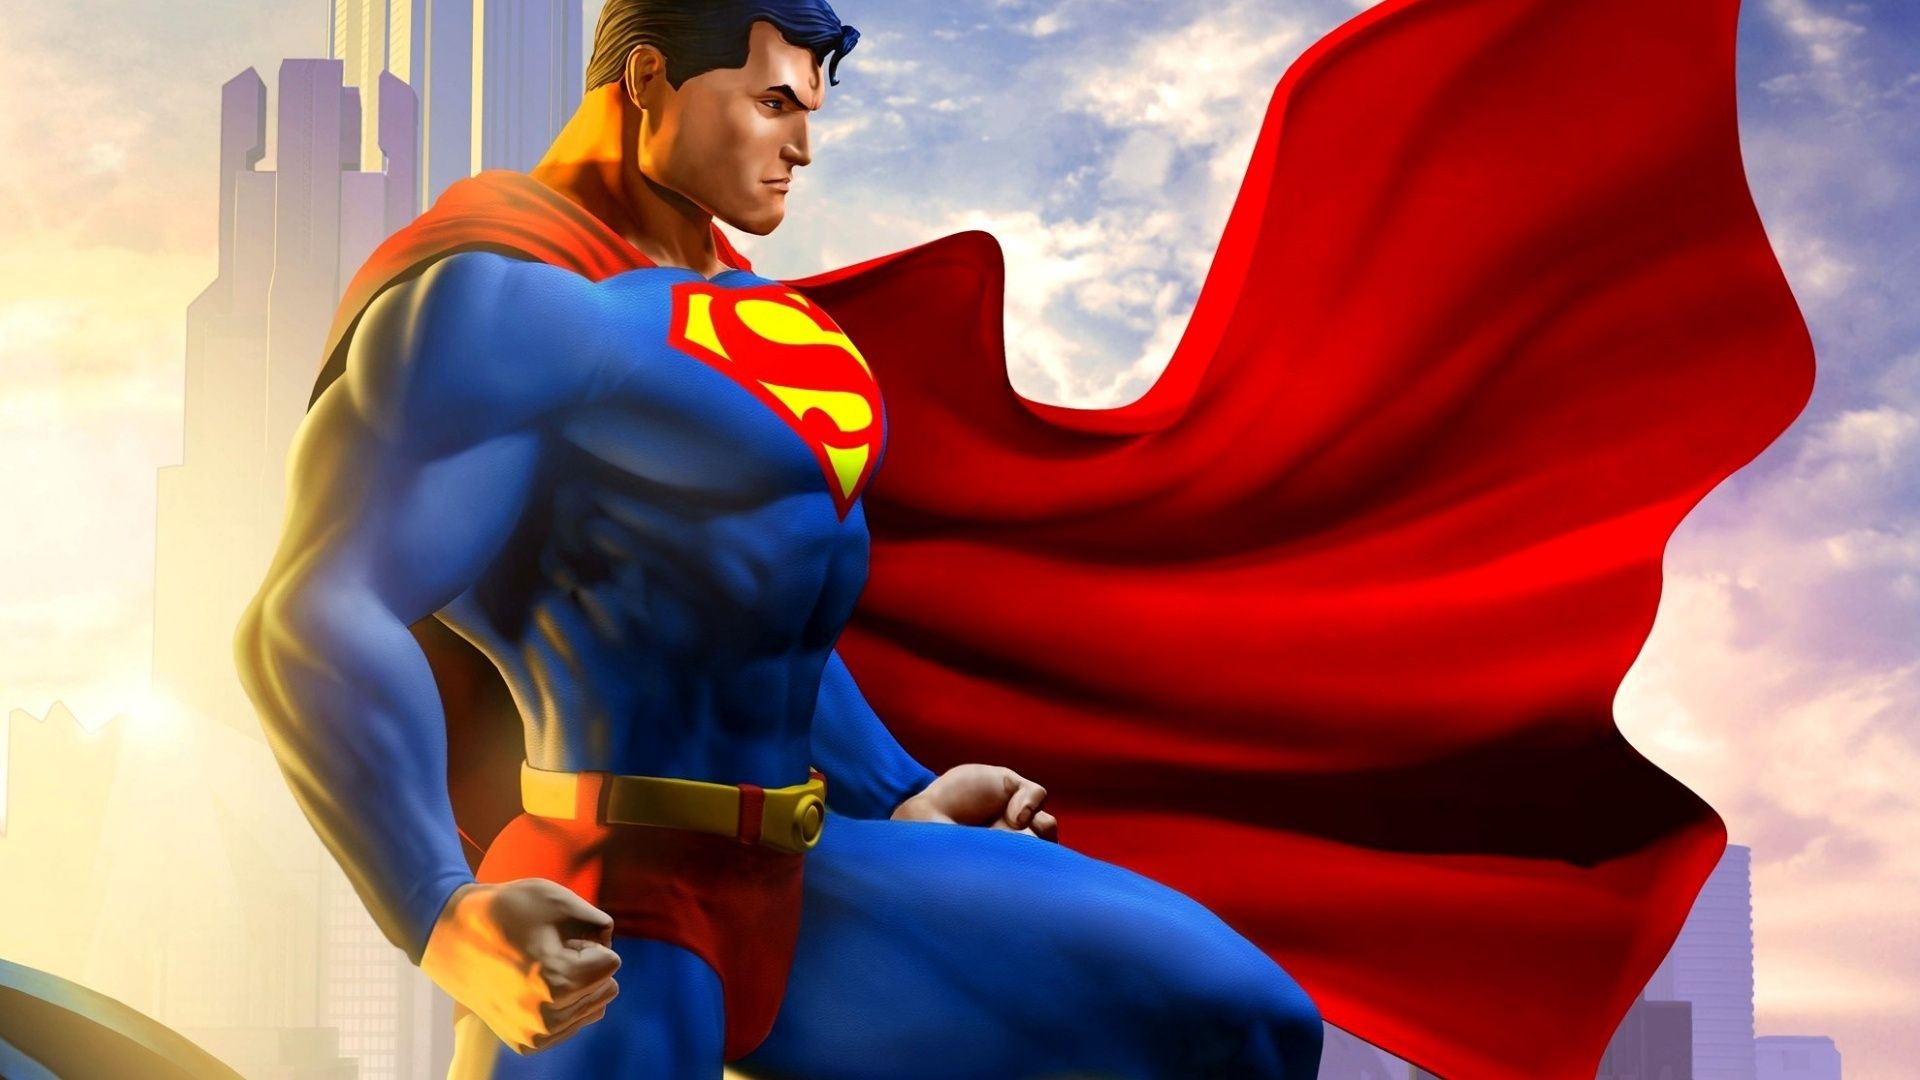 Superman Backgrounds, Compatible - PC, Mobile, Gadgets| 1920x1080 px